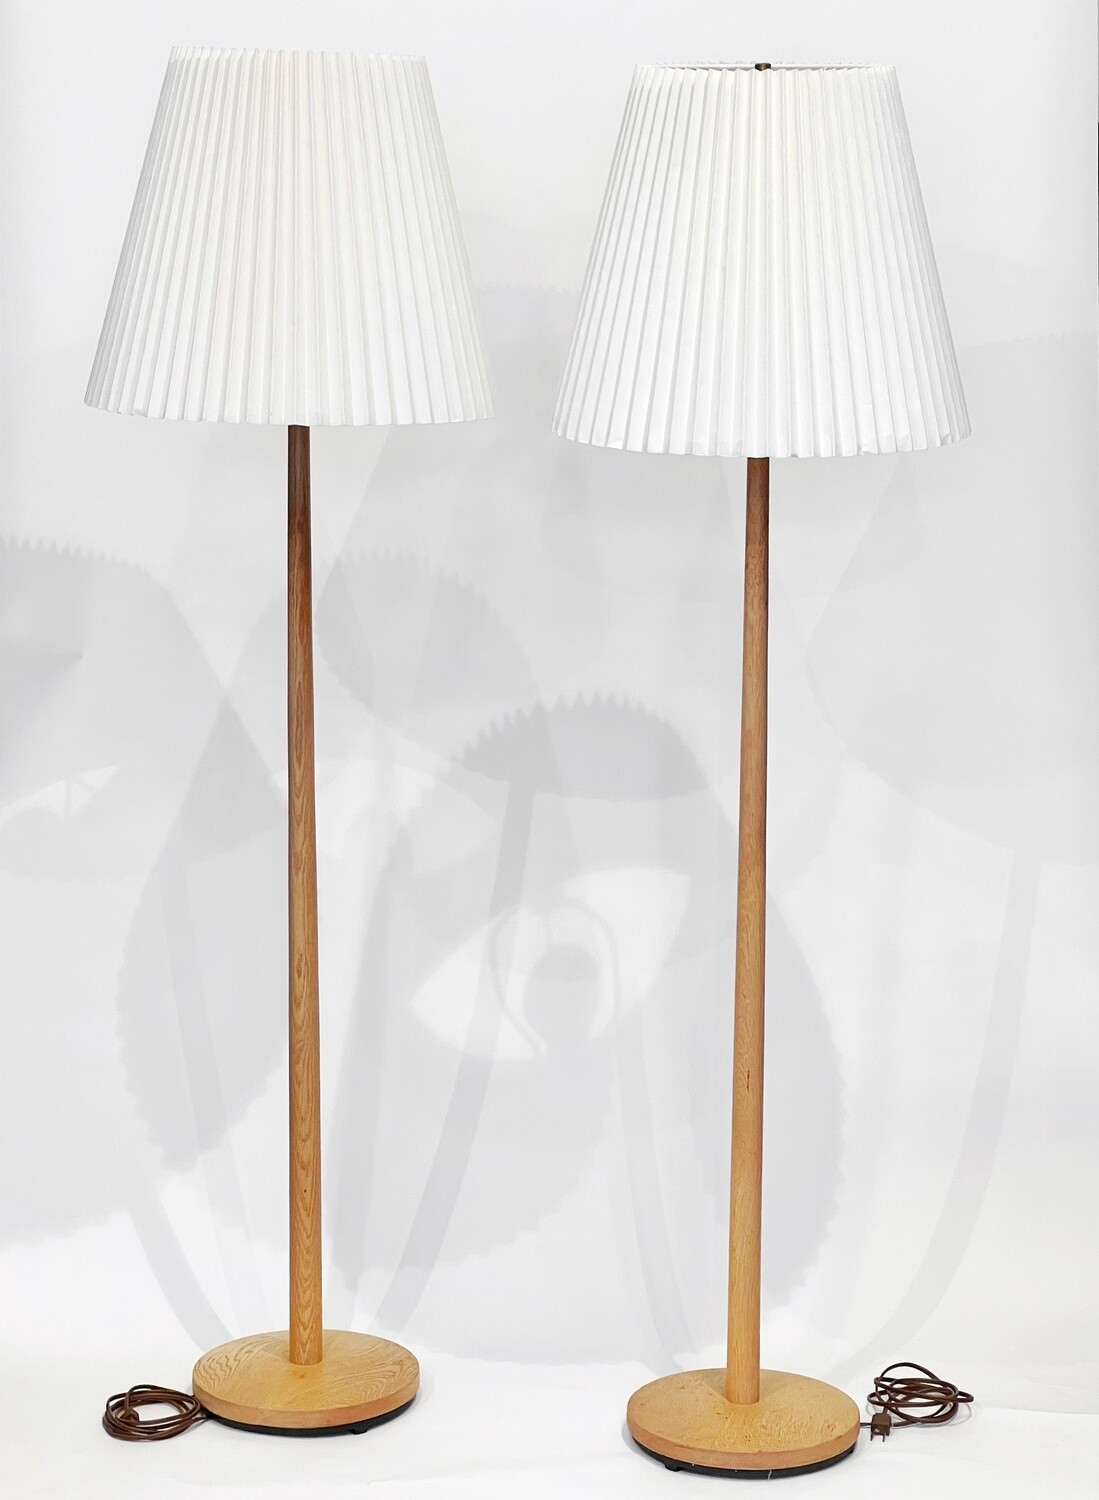 Quarter sawn Oak floor lamp by George Kovacs 1960s - SWEDEN